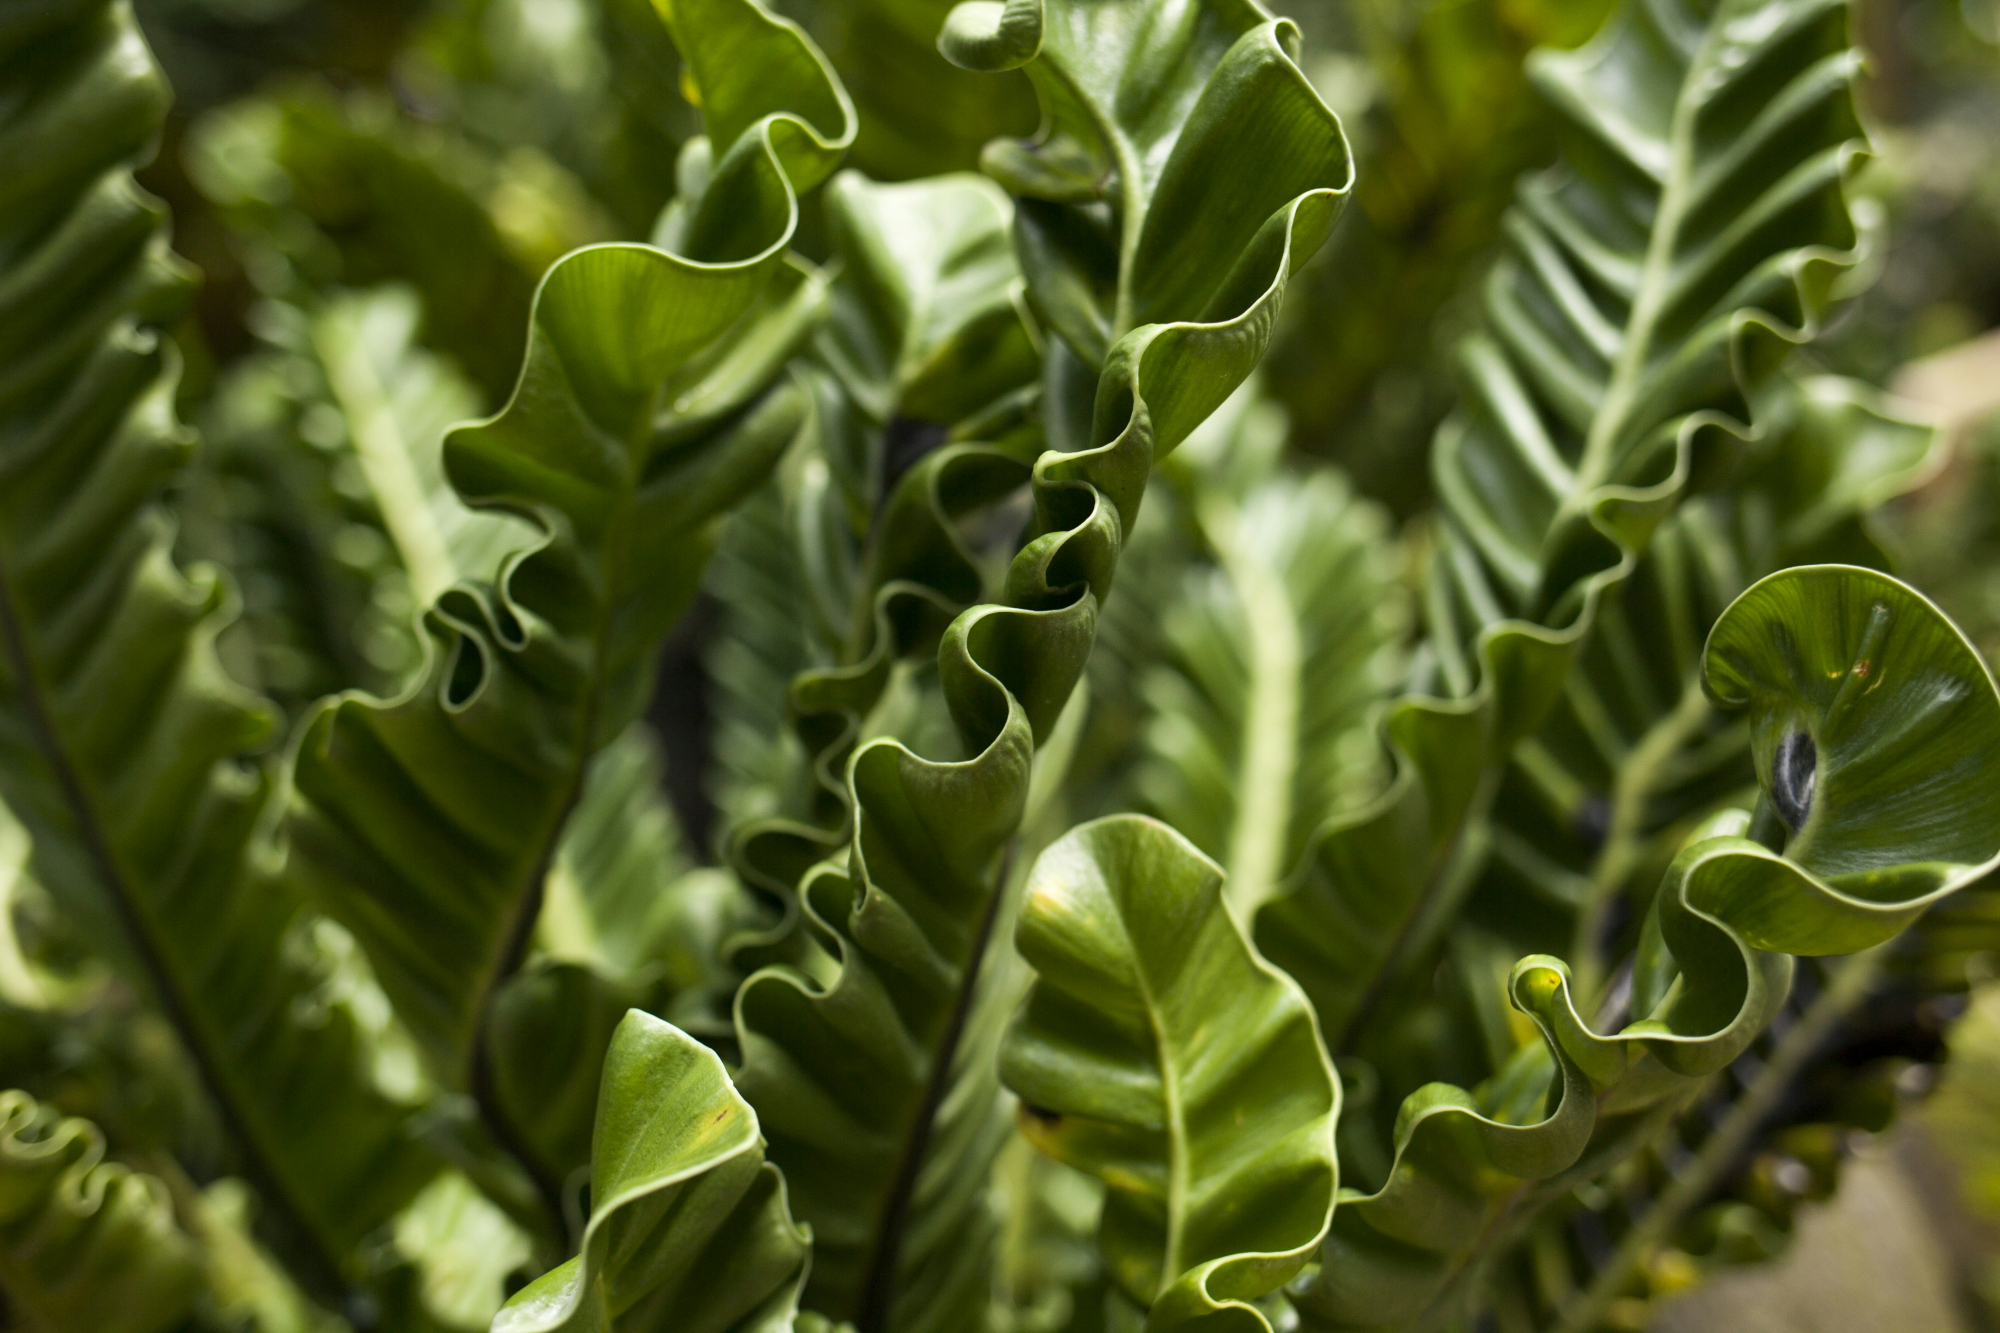 découvrez tout sur l'asplenium, une plante verte populaire, ses caractéristiques, ses soins et sa culture. apprenez comment entretenir cette fougère pour une belle décoration intérieure ou extérieure.